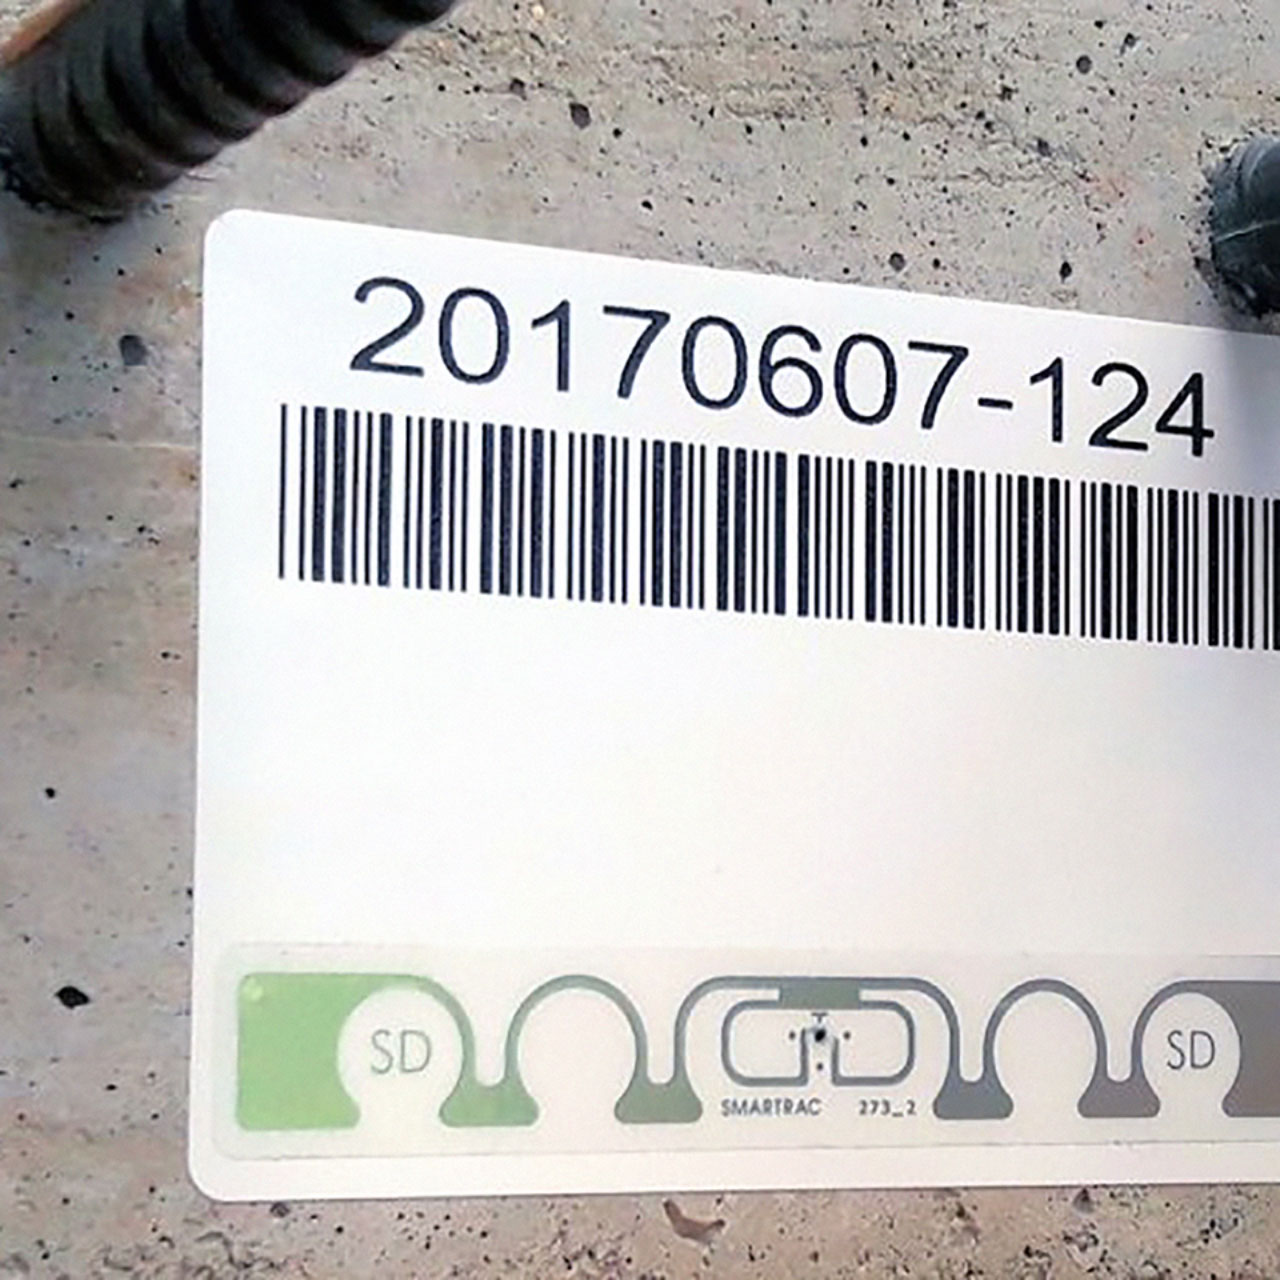 Etykieta prefabrykatu betonowego - znakowanie dla przemysłu